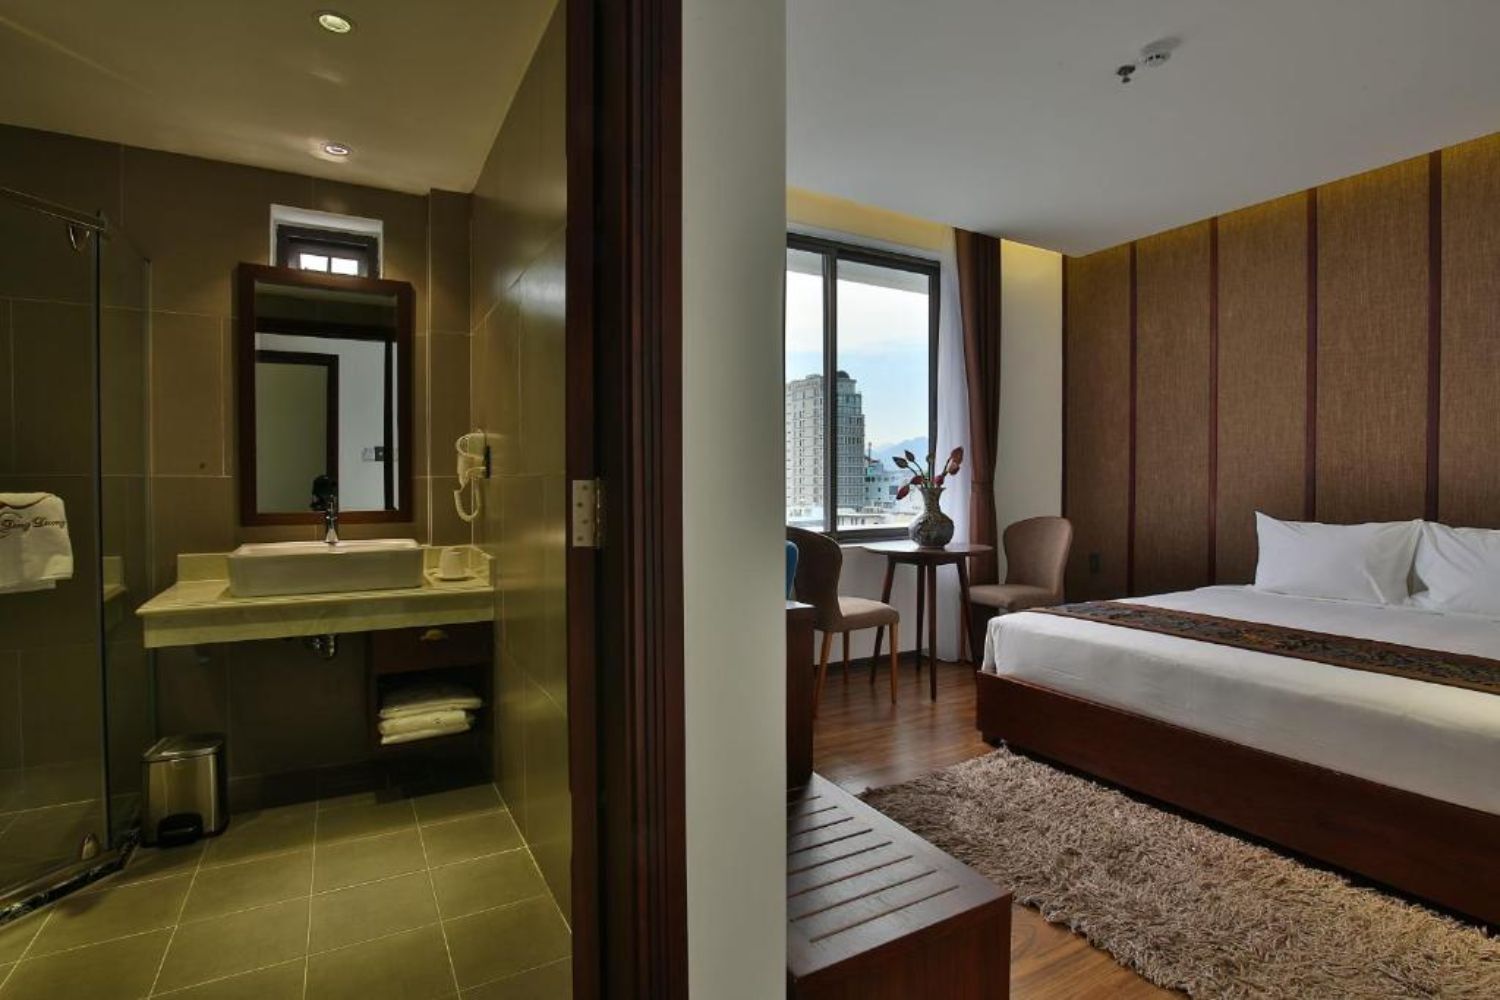 Dong Duong Hotel and Suites thiết kế theo lối kiến trúc sang trọng và trang nhã 5